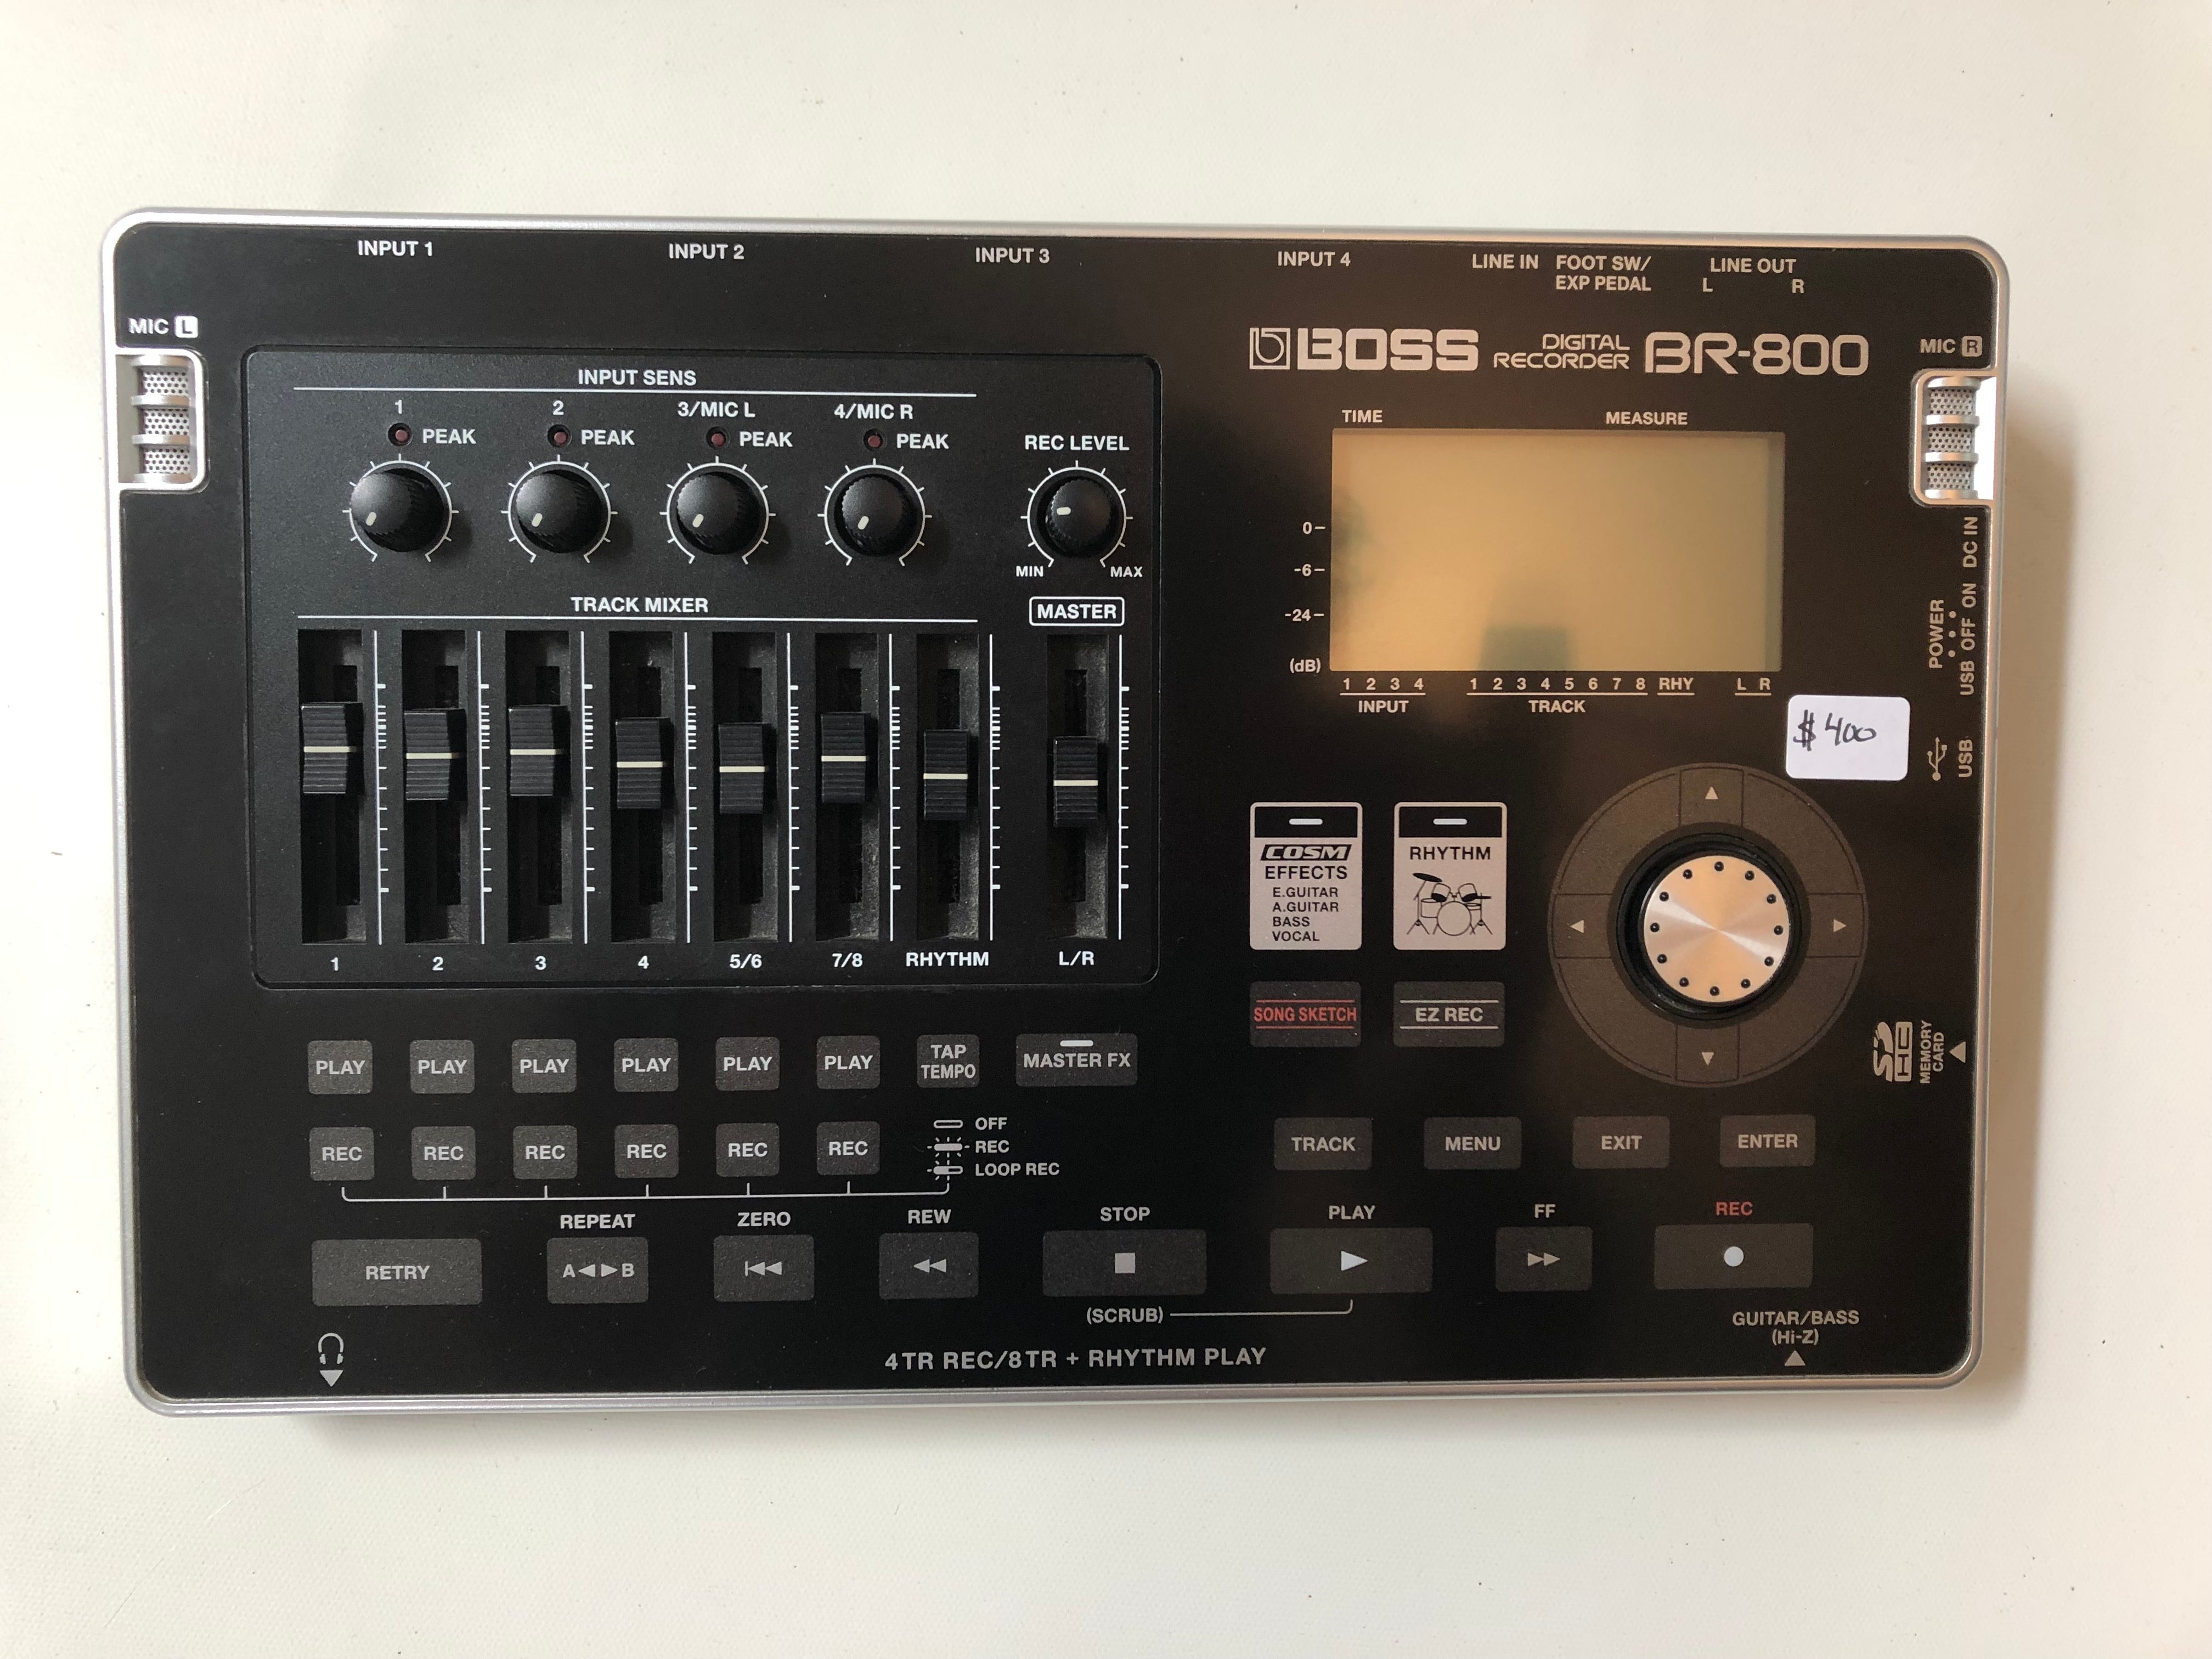 BOSS Digital Recorder BR-800